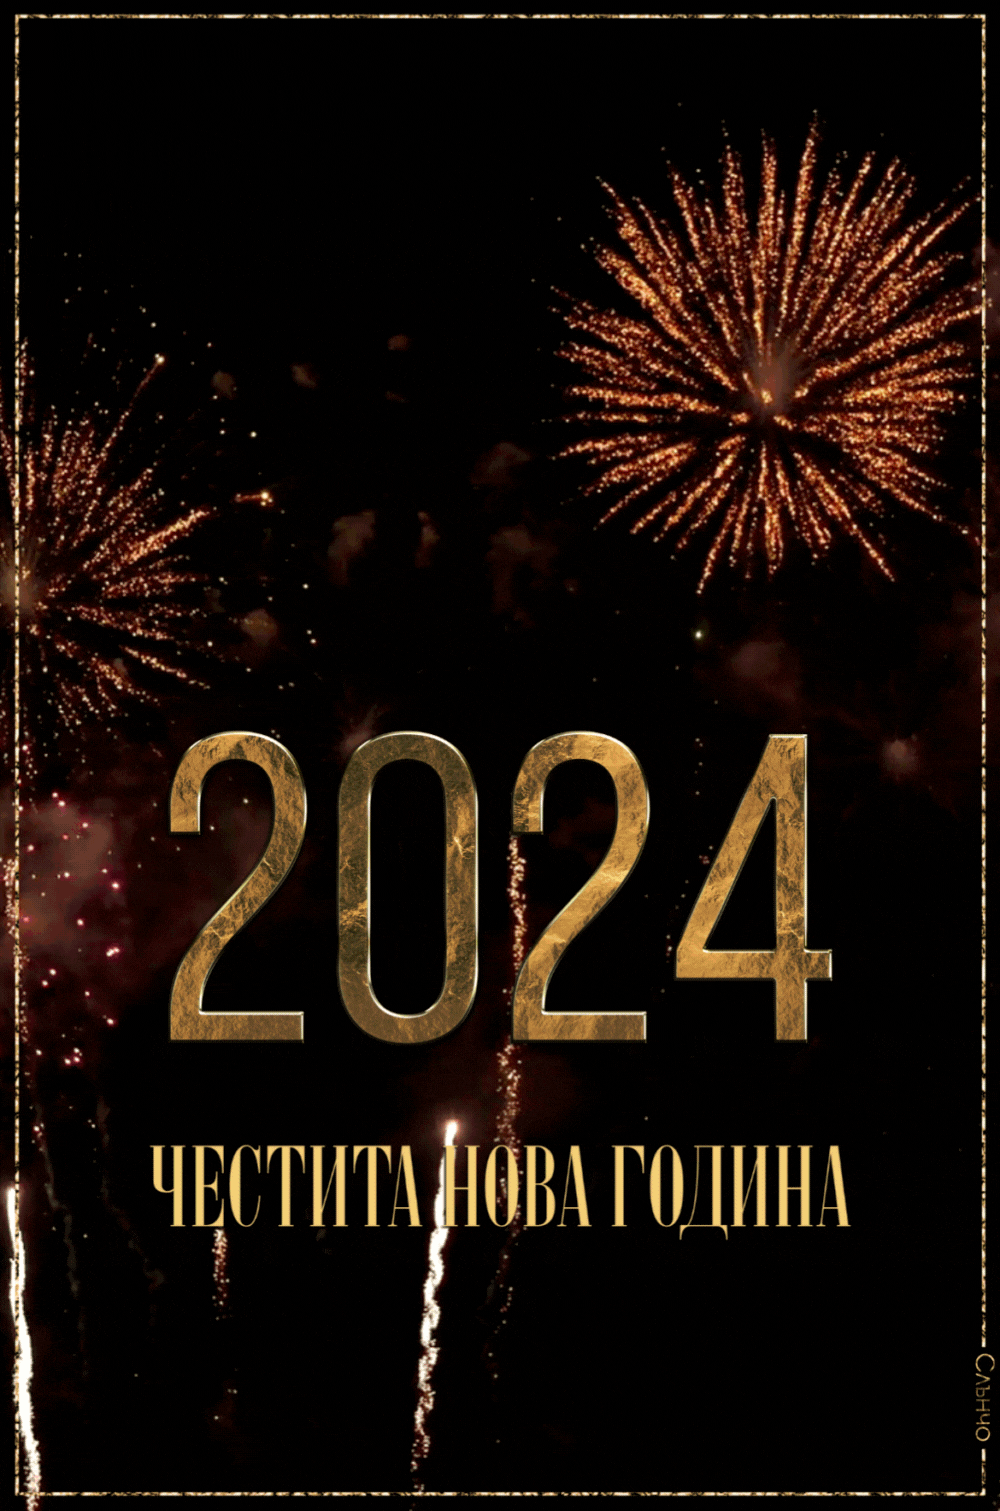 Честита Нова Година 2024, Видео, анимация, новогодишни картички, нова година 2024, картички за нова година 2024, слънчо, слънчо обичкам те